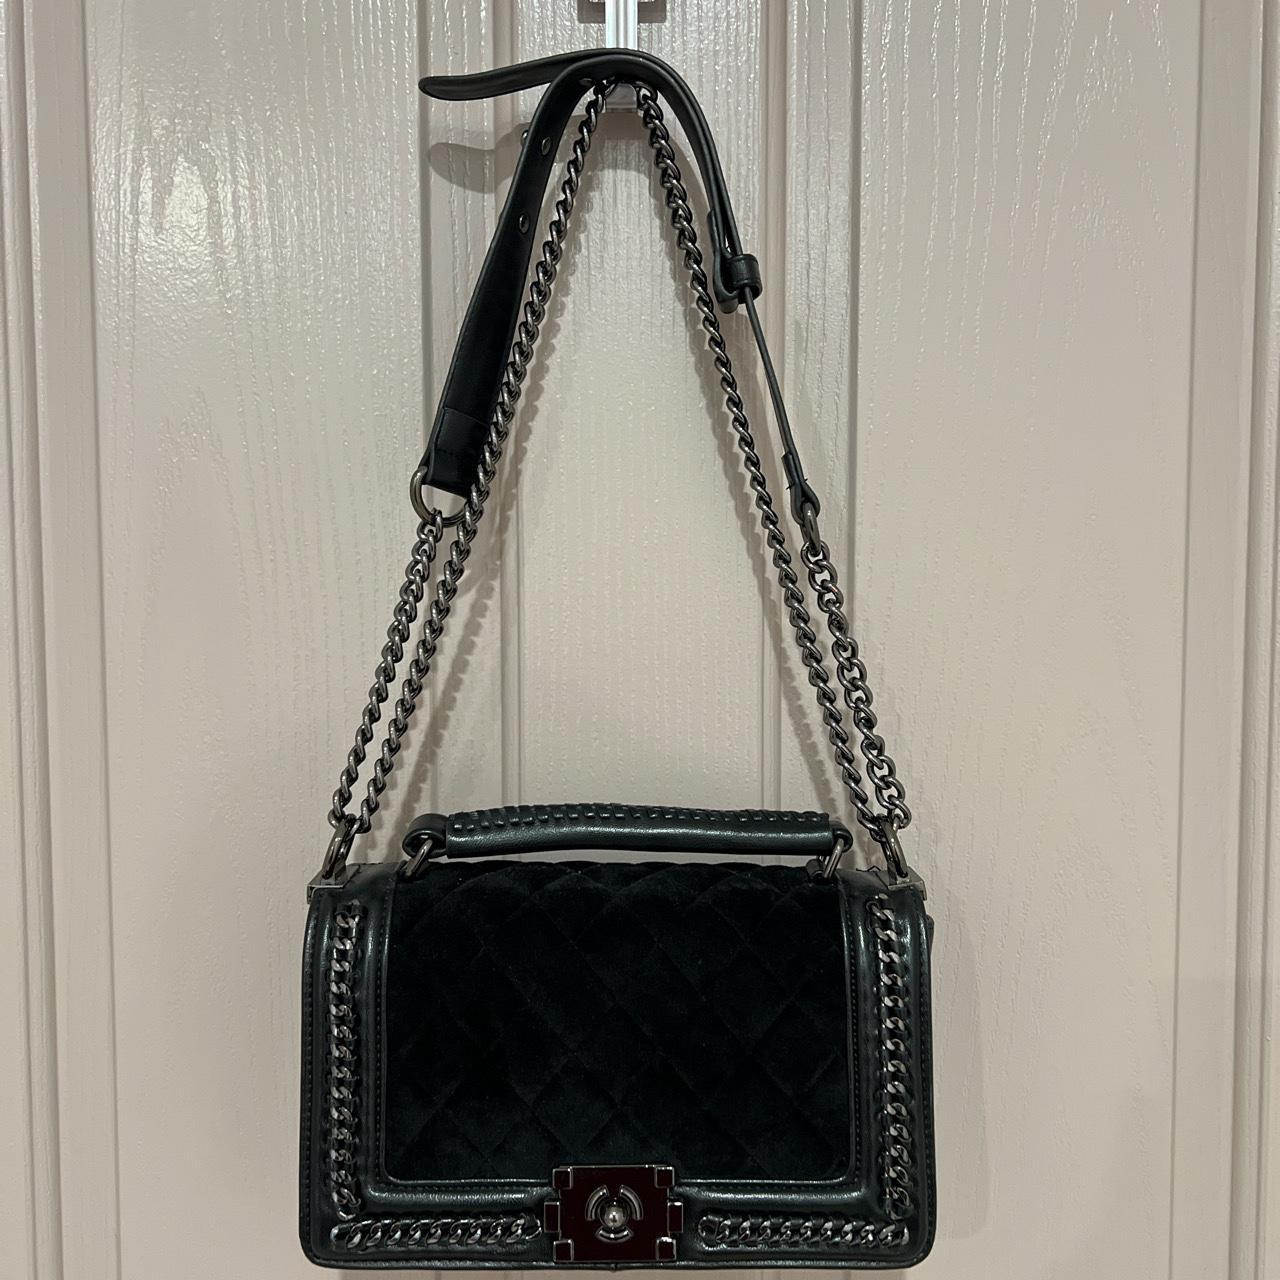 Black luxury bag - Depop